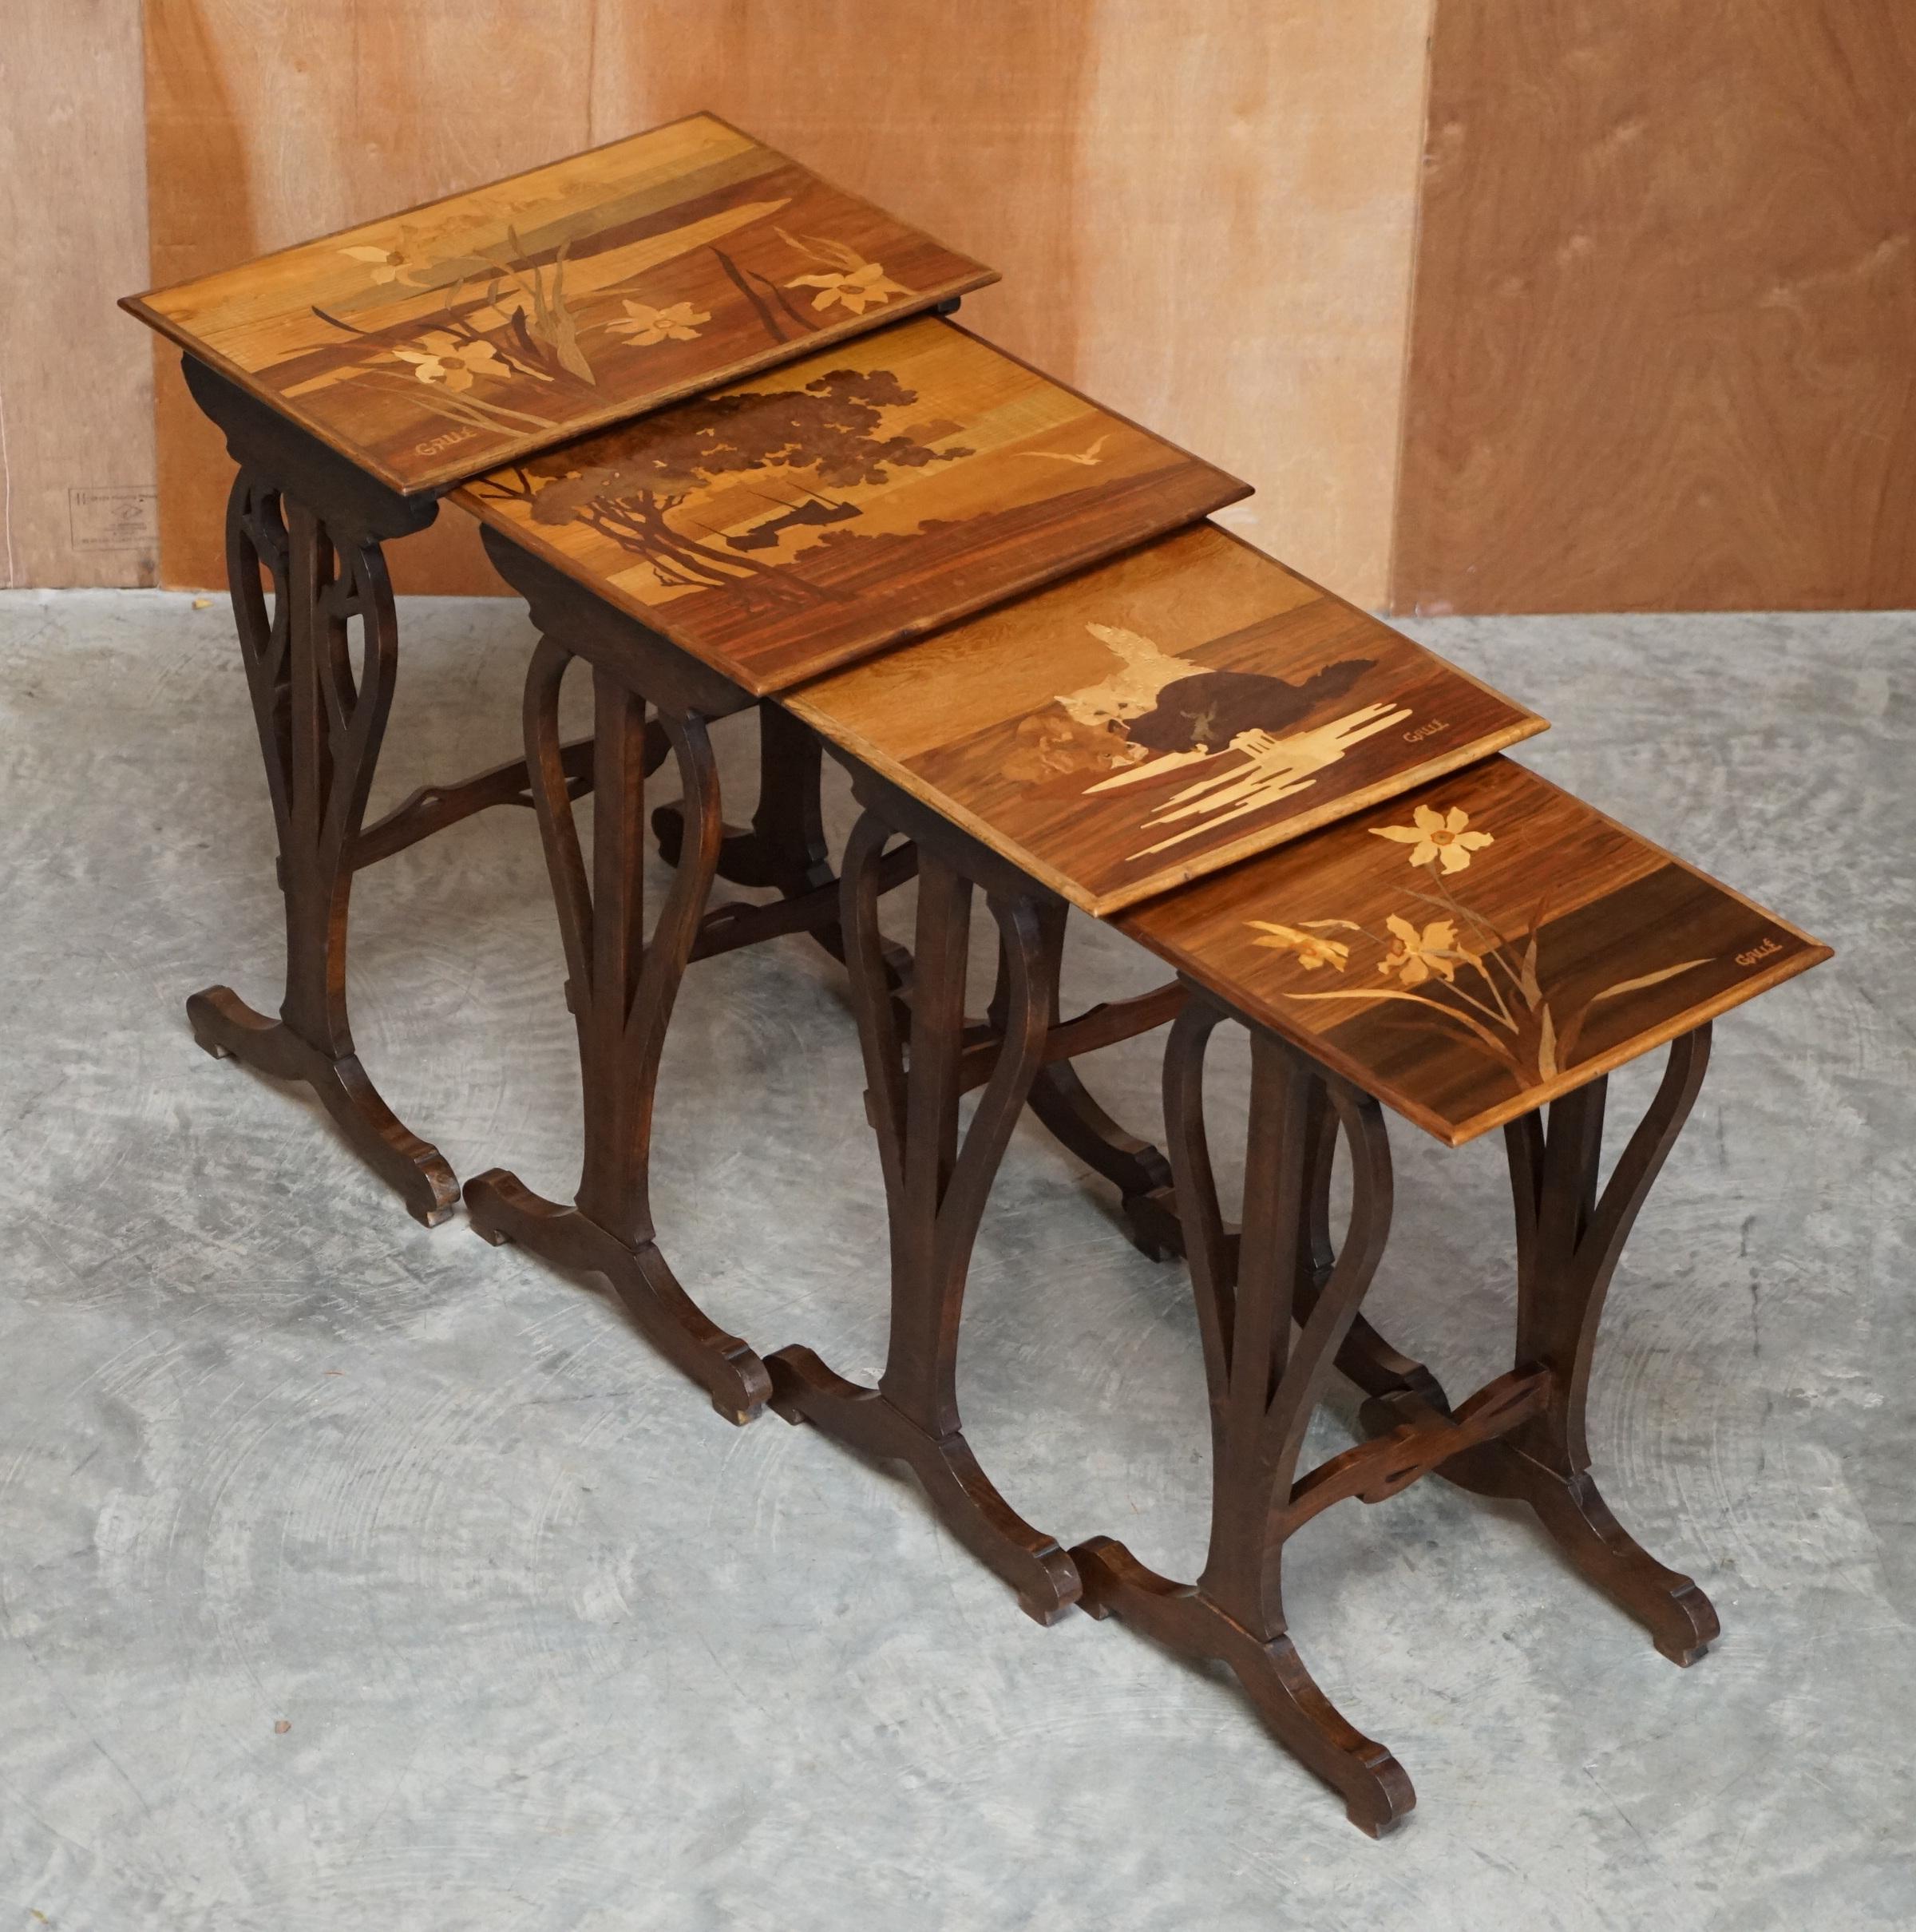 Early 20th Century Rare Nest of Four Emile Galle Specimen Wood Tables Art Nouveau Cats Burr Walnut